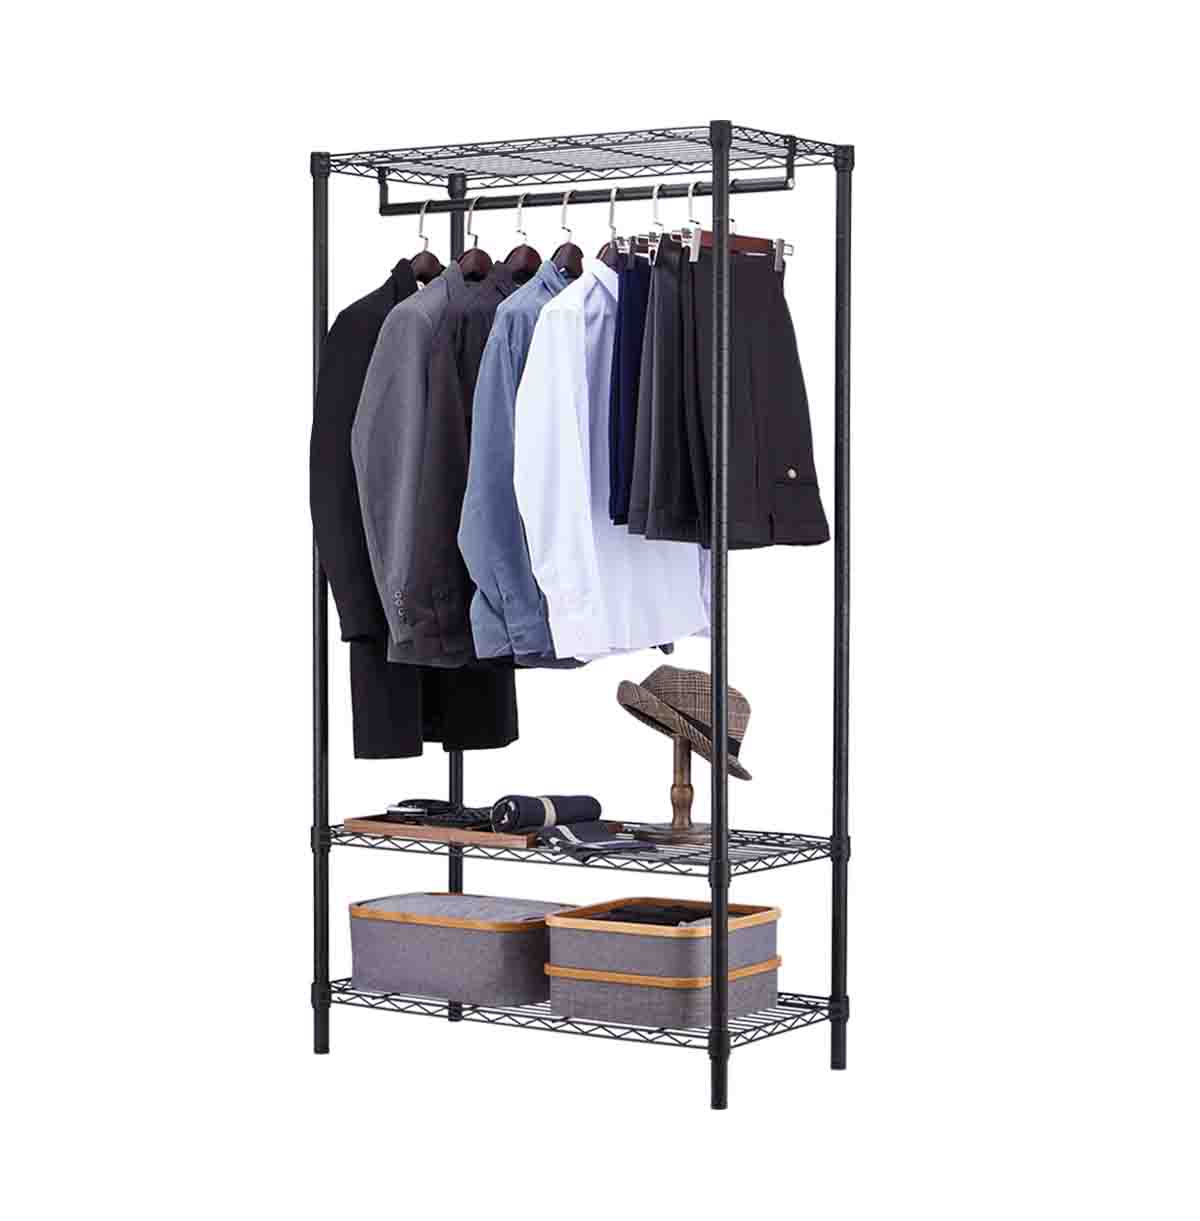 3 Tier Wire Closet Shelf Organizer With Hanging Rod / Freestanding Open Wardrobe Organizer / 36 Inch